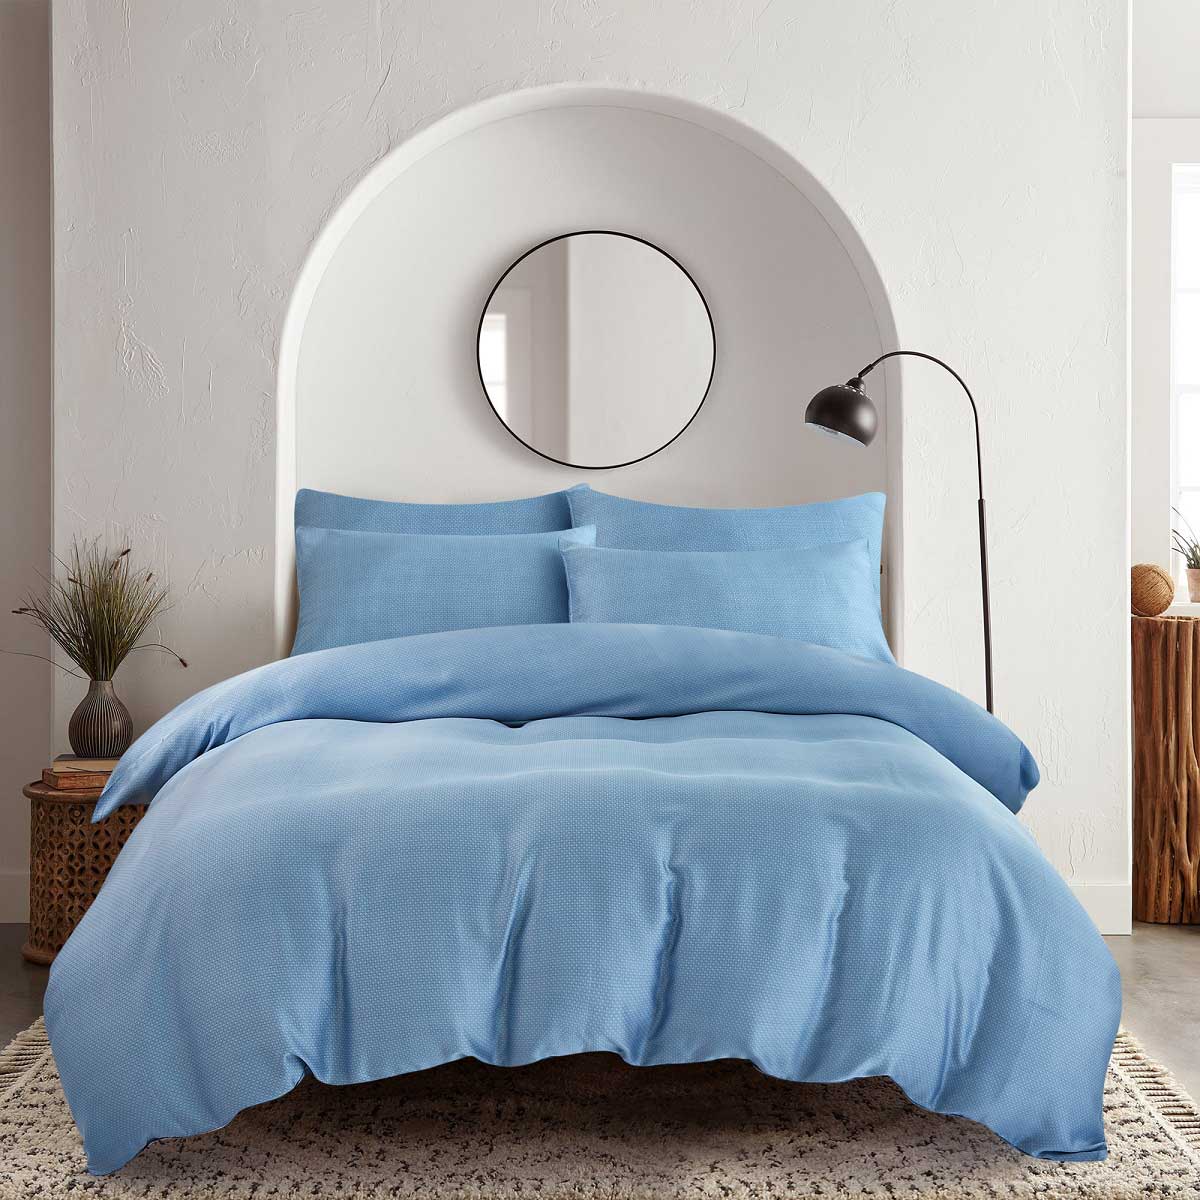 Комплект постельного белья семейный Pappel smooth blue комплект постельного белья семейный pappel smooth blue